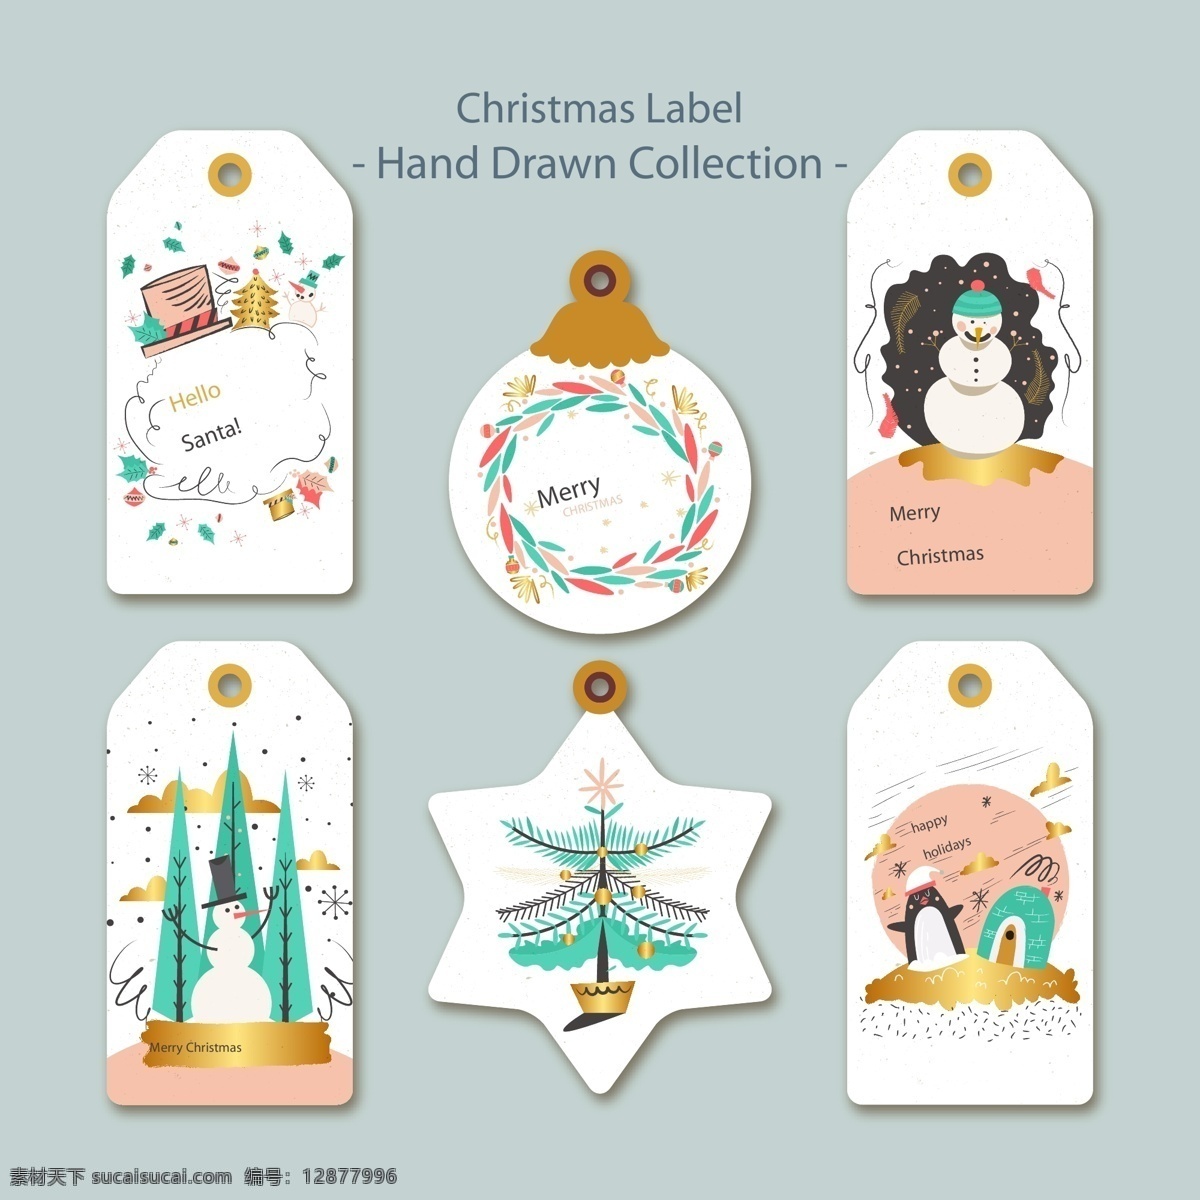 精美 圣诞节 标签 插画 圣诞树 矢量素材 手绘 雪人 花环 明信片